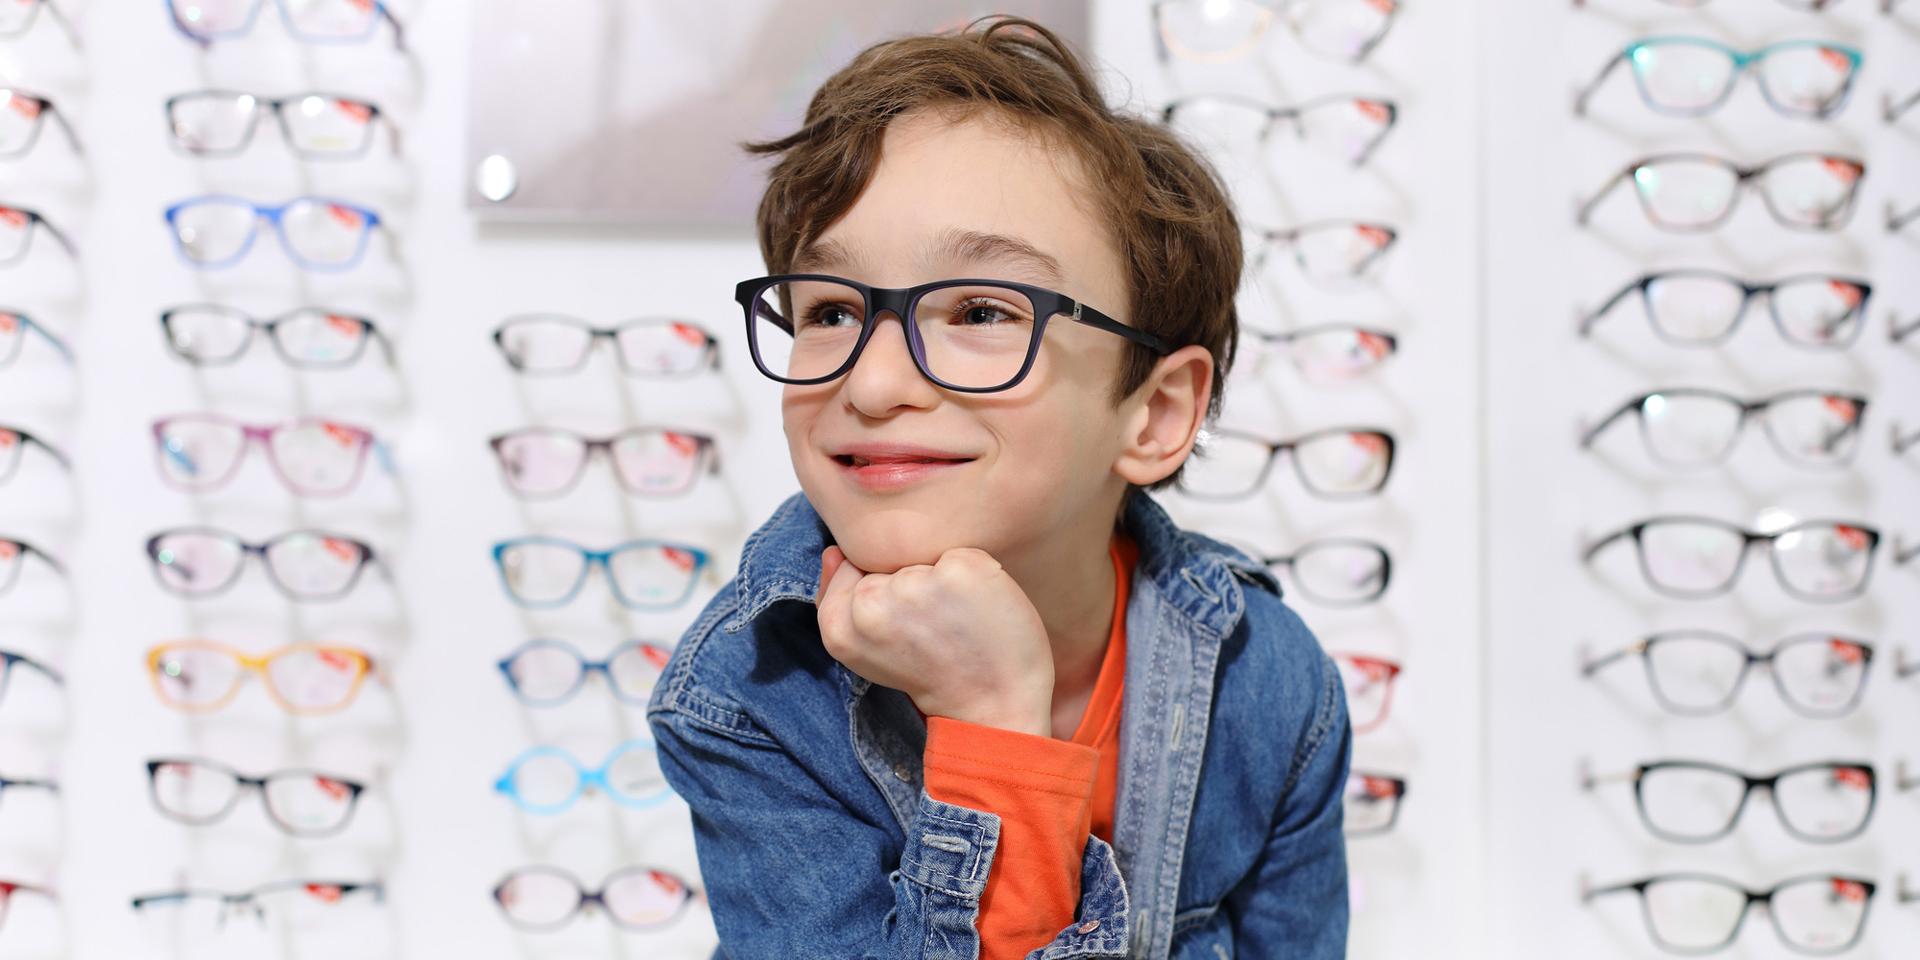 Le montature degli occhiali giuste per i bambini